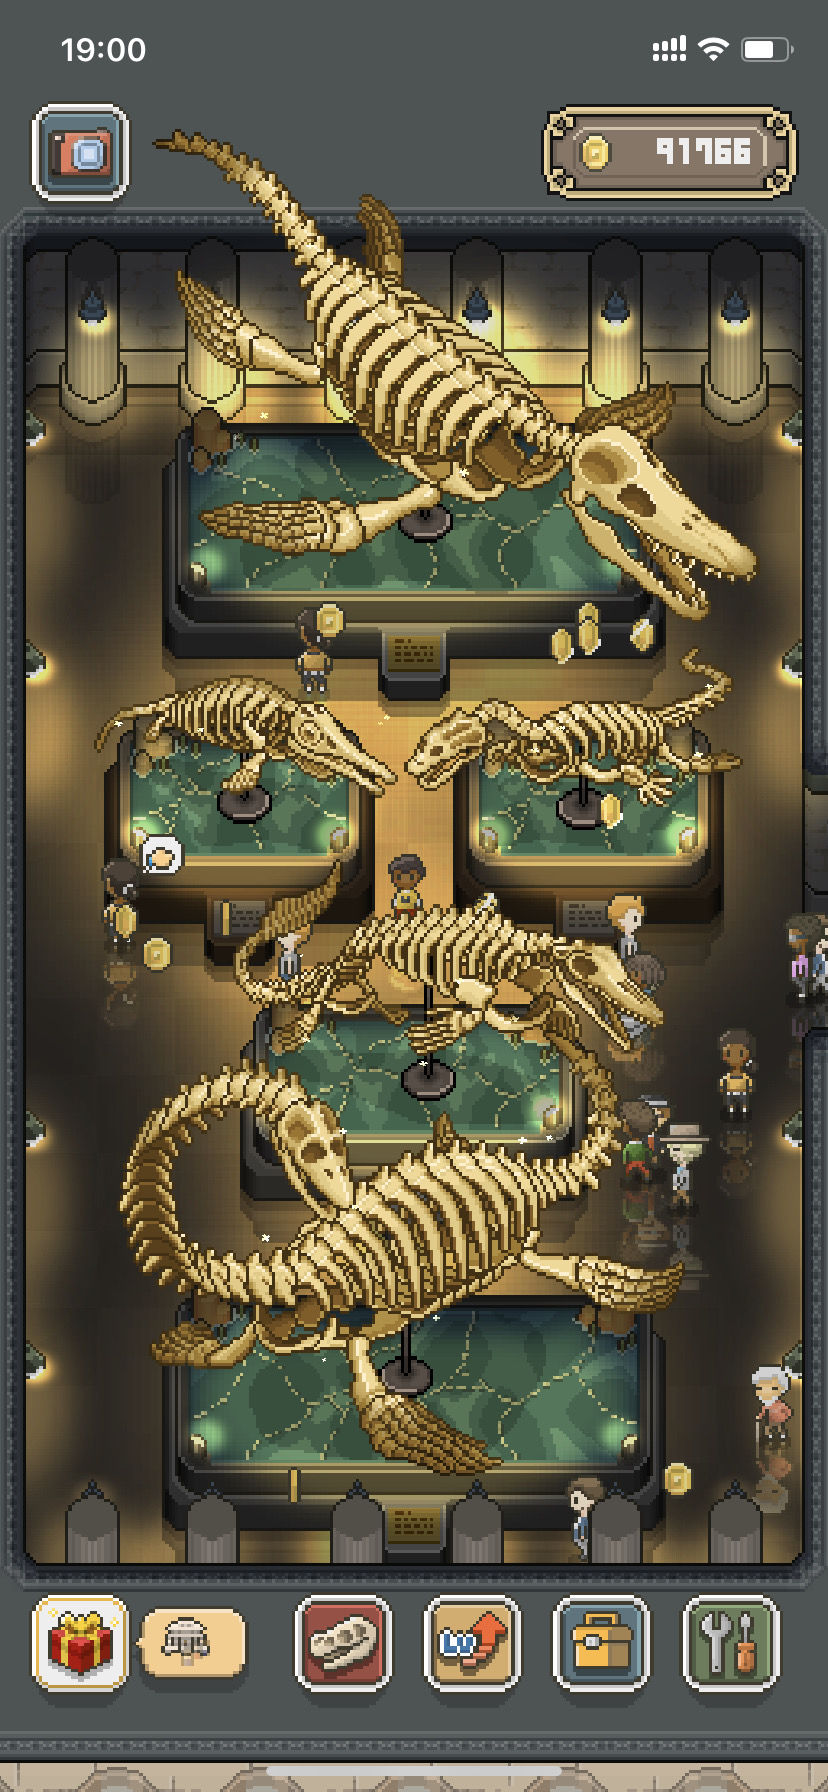 我的化石博物馆海洋龙大全 海洋龙图鉴一览